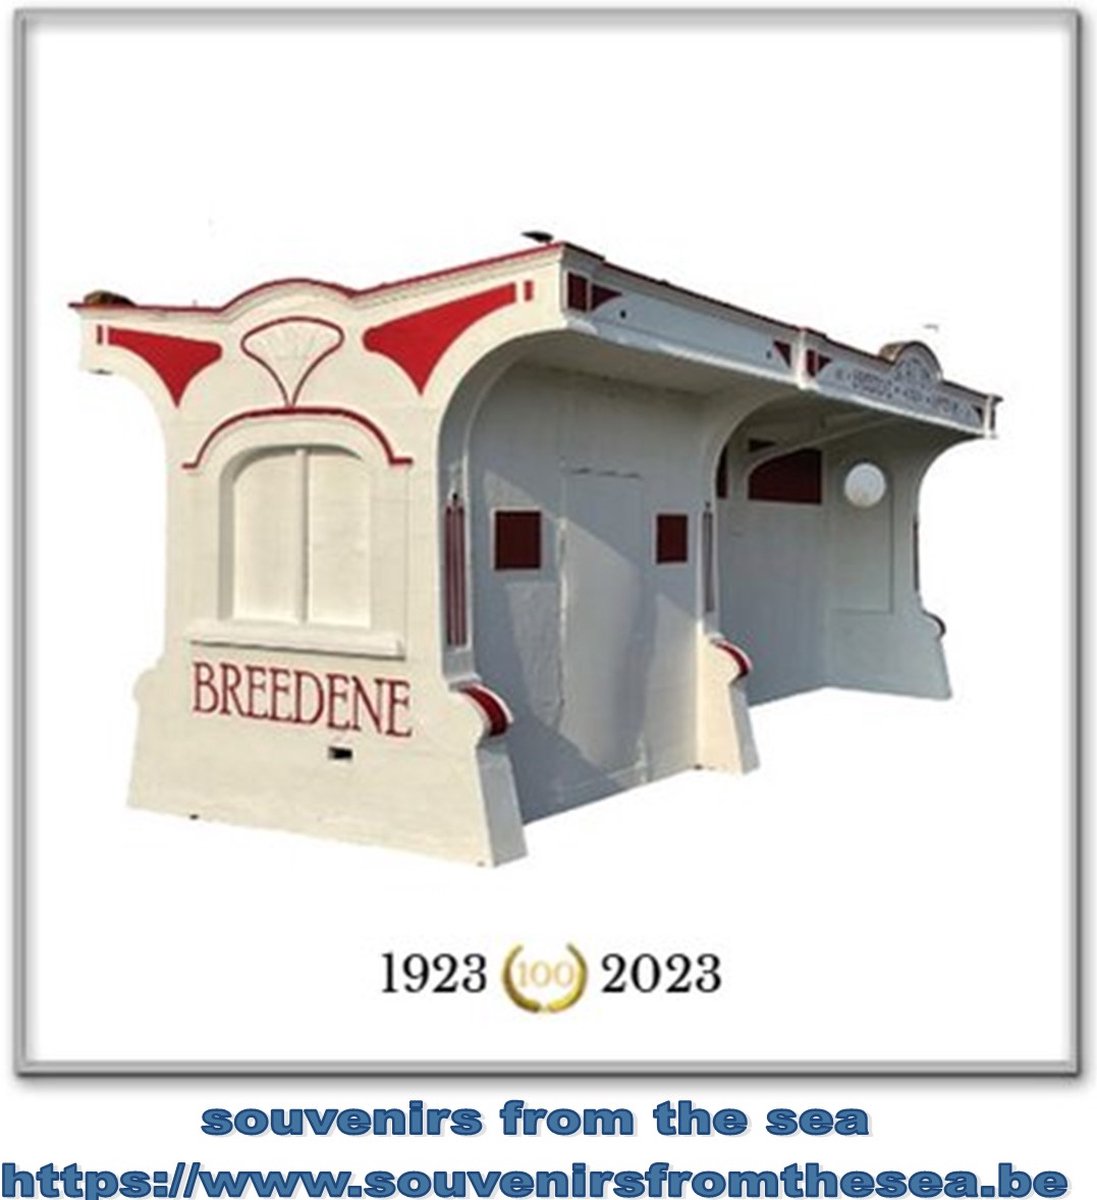 Souvenirs from the sea - foto op tegel - Schilderij - Bredene - 100 jaar - oud tramwachthuisje ‘Breedene Hippodrome’ - Schilderijen op tegel - 15x15 cm - keramiek - Wanddecoratie - Woonkamer - Slaapkamer - badkamer - keuken